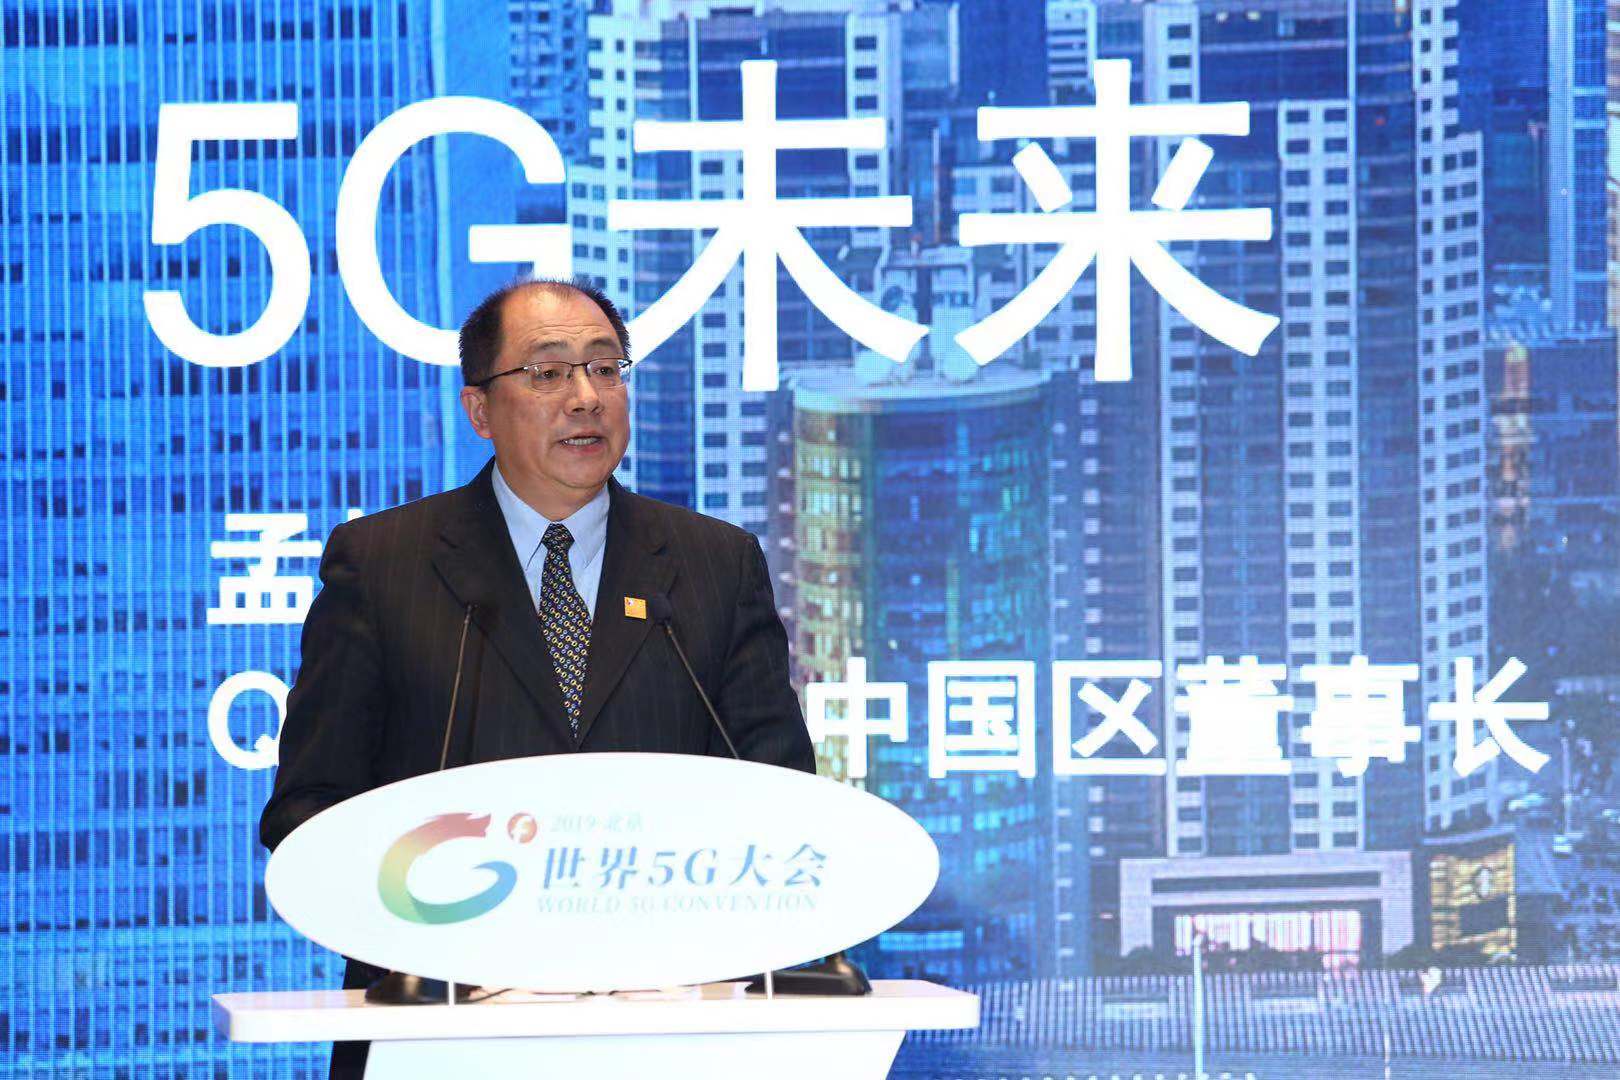 5G技术潜力仅现冰山一角——访高通中国区董事长 孟樸